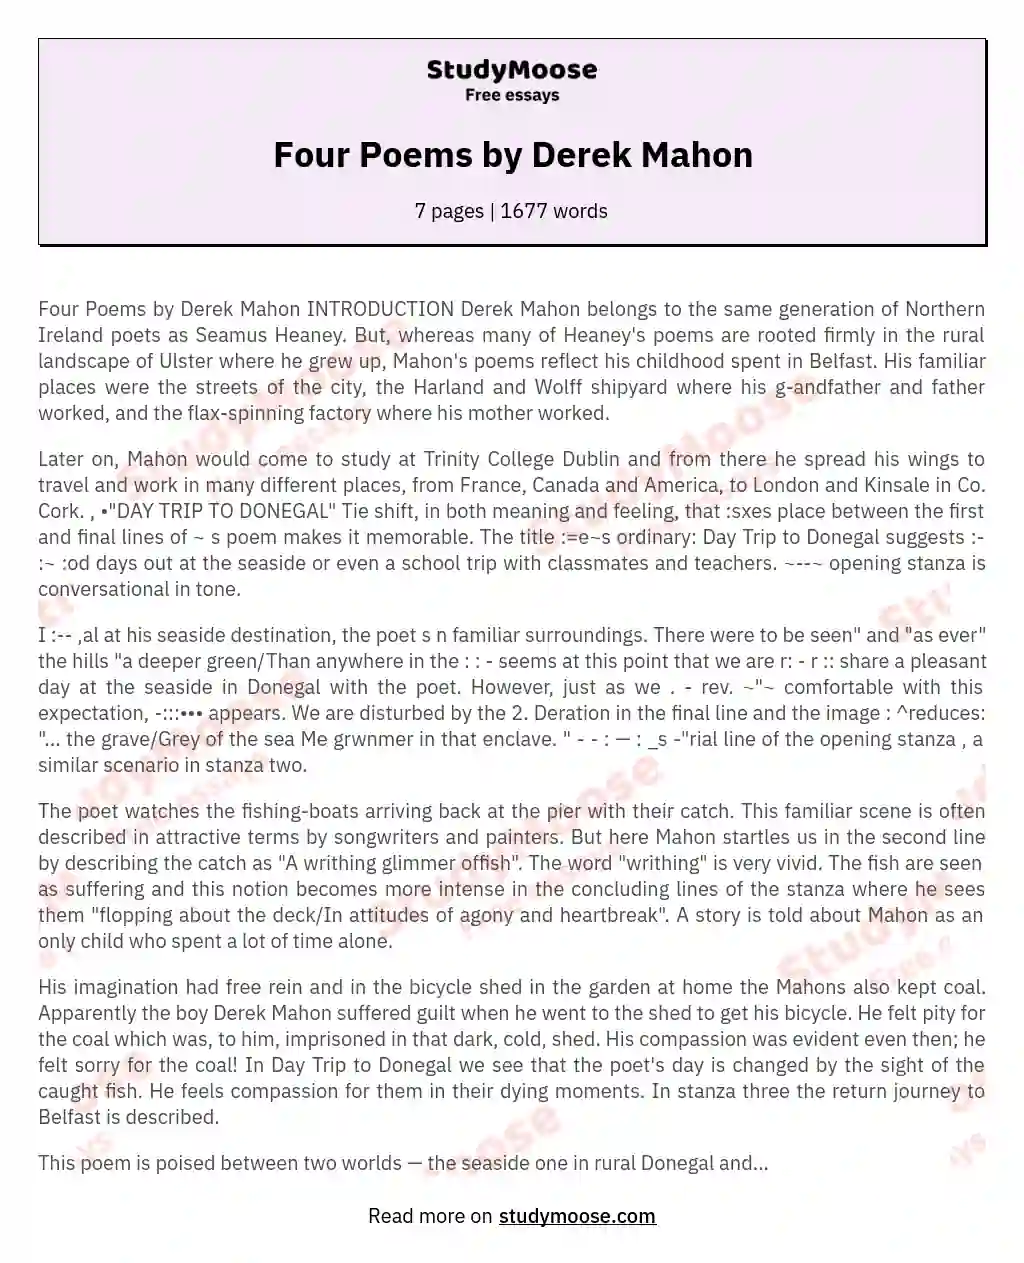 mahon poetry essay